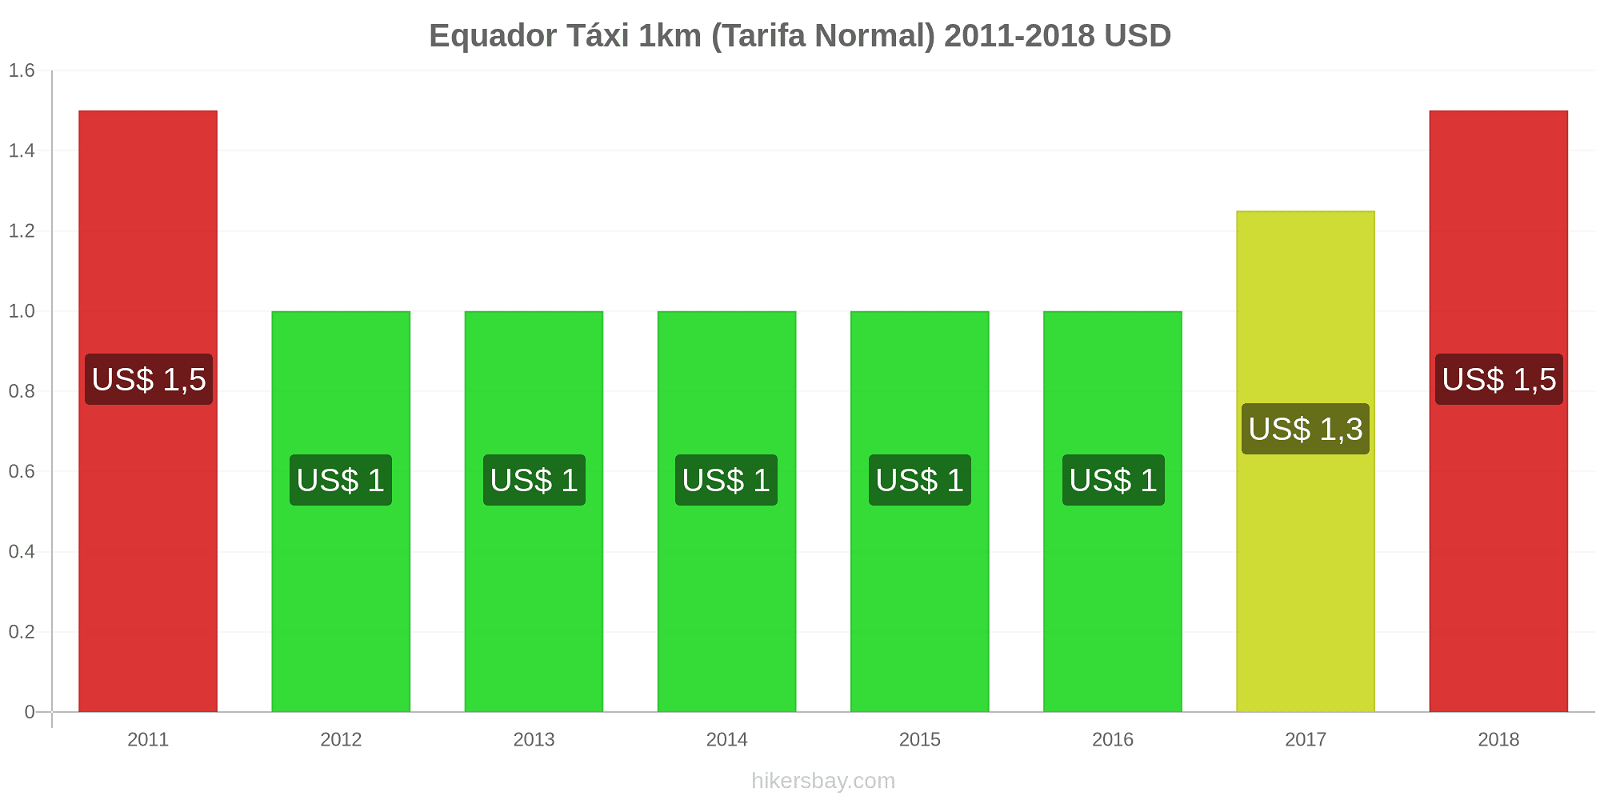 Equador mudanças de preços Táxi 1km (Tarifa Normal) hikersbay.com